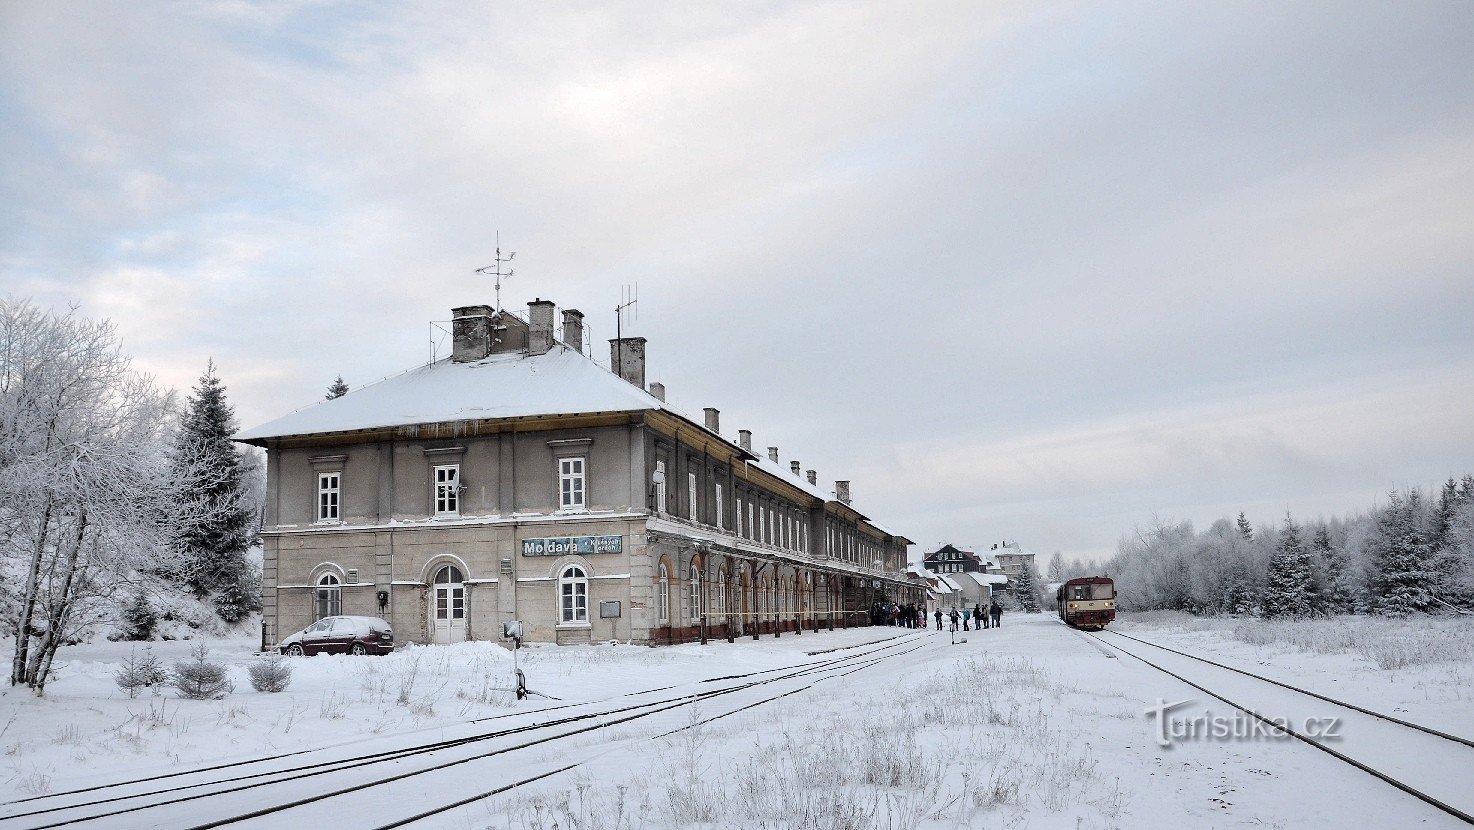 Σιδηροδρομικός σταθμός της Μολδαβίας στα Ore Mountains